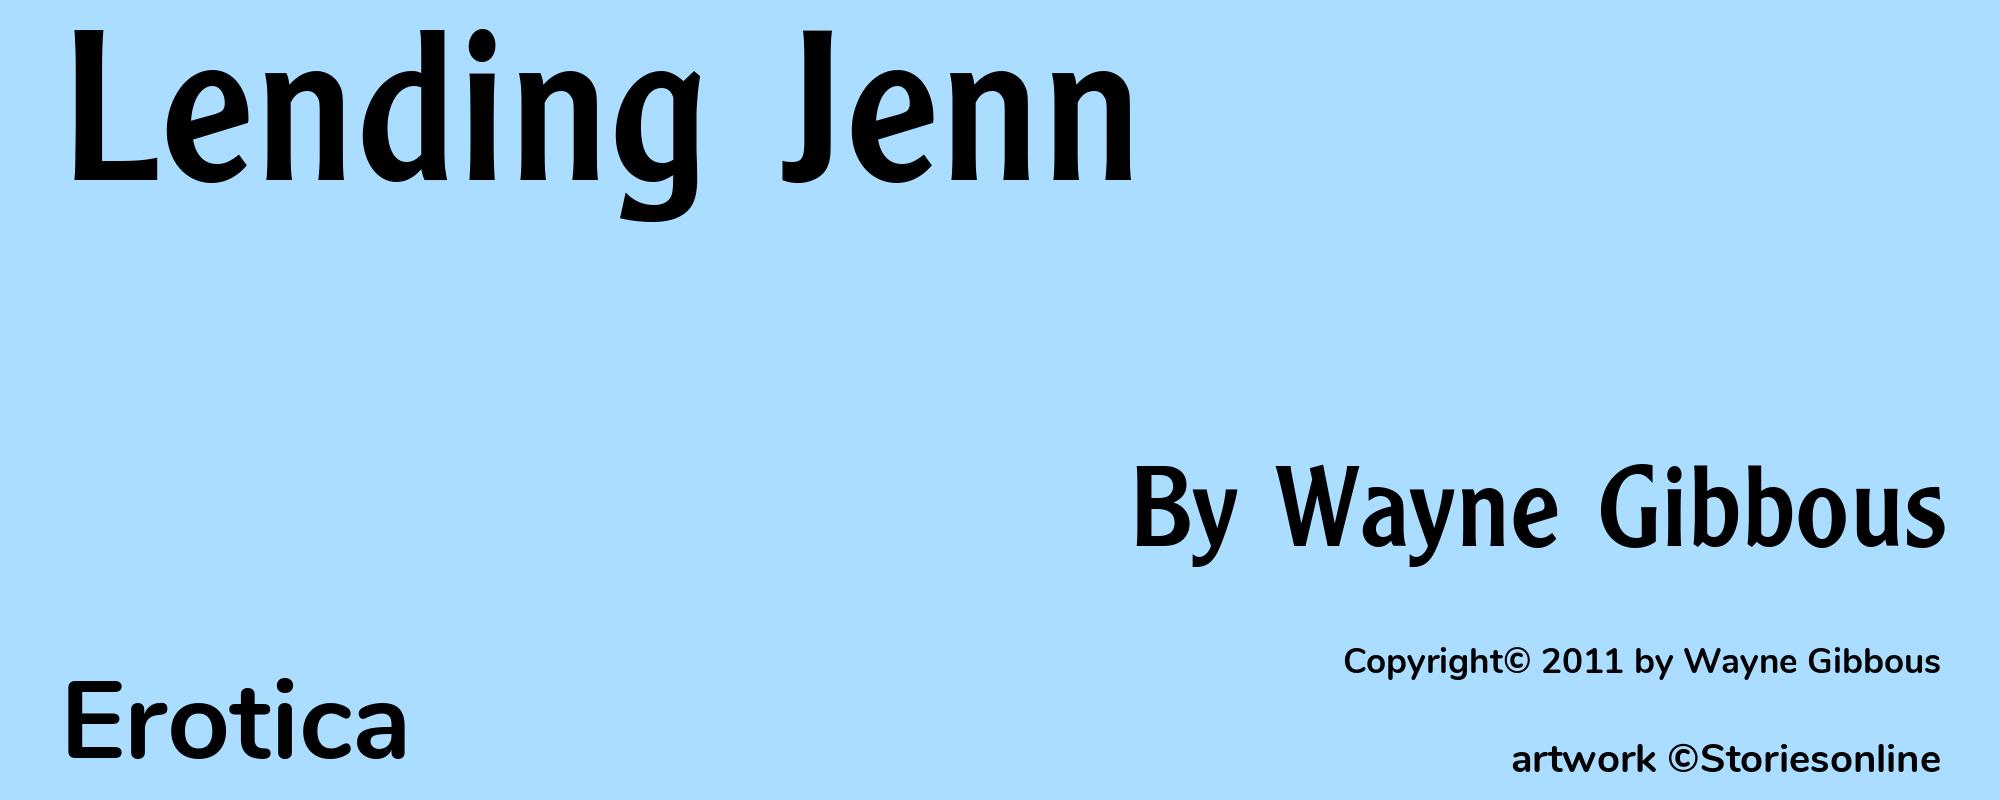 Lending Jenn - Cover